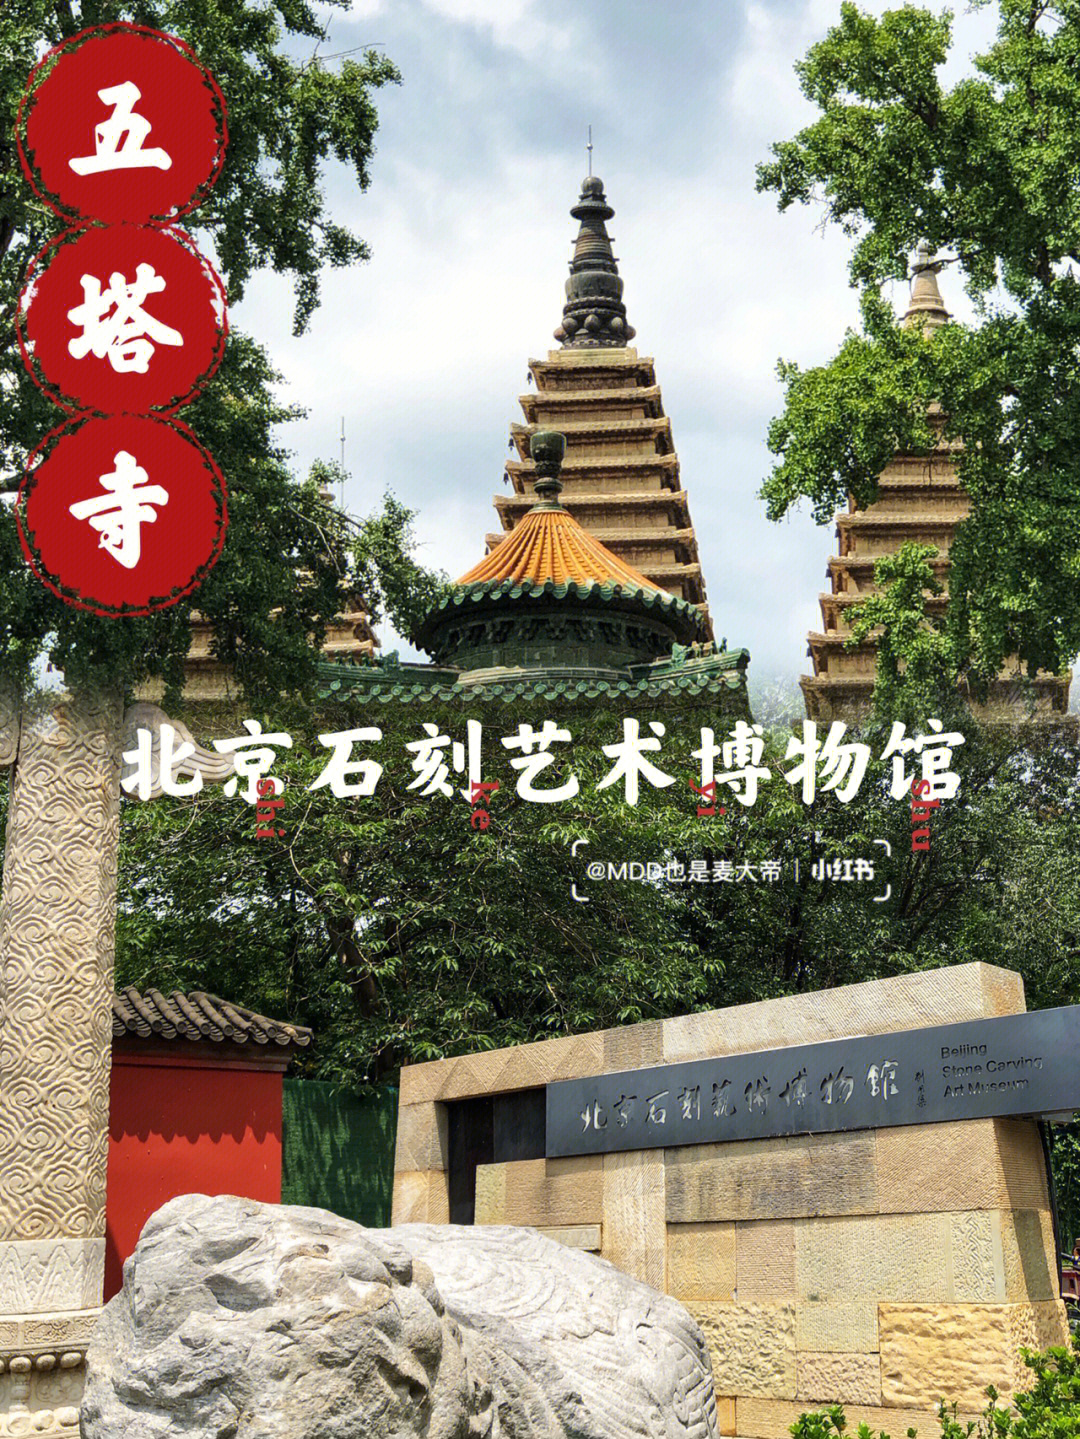 寻访古迹北京石刻艺术博物馆五塔寺